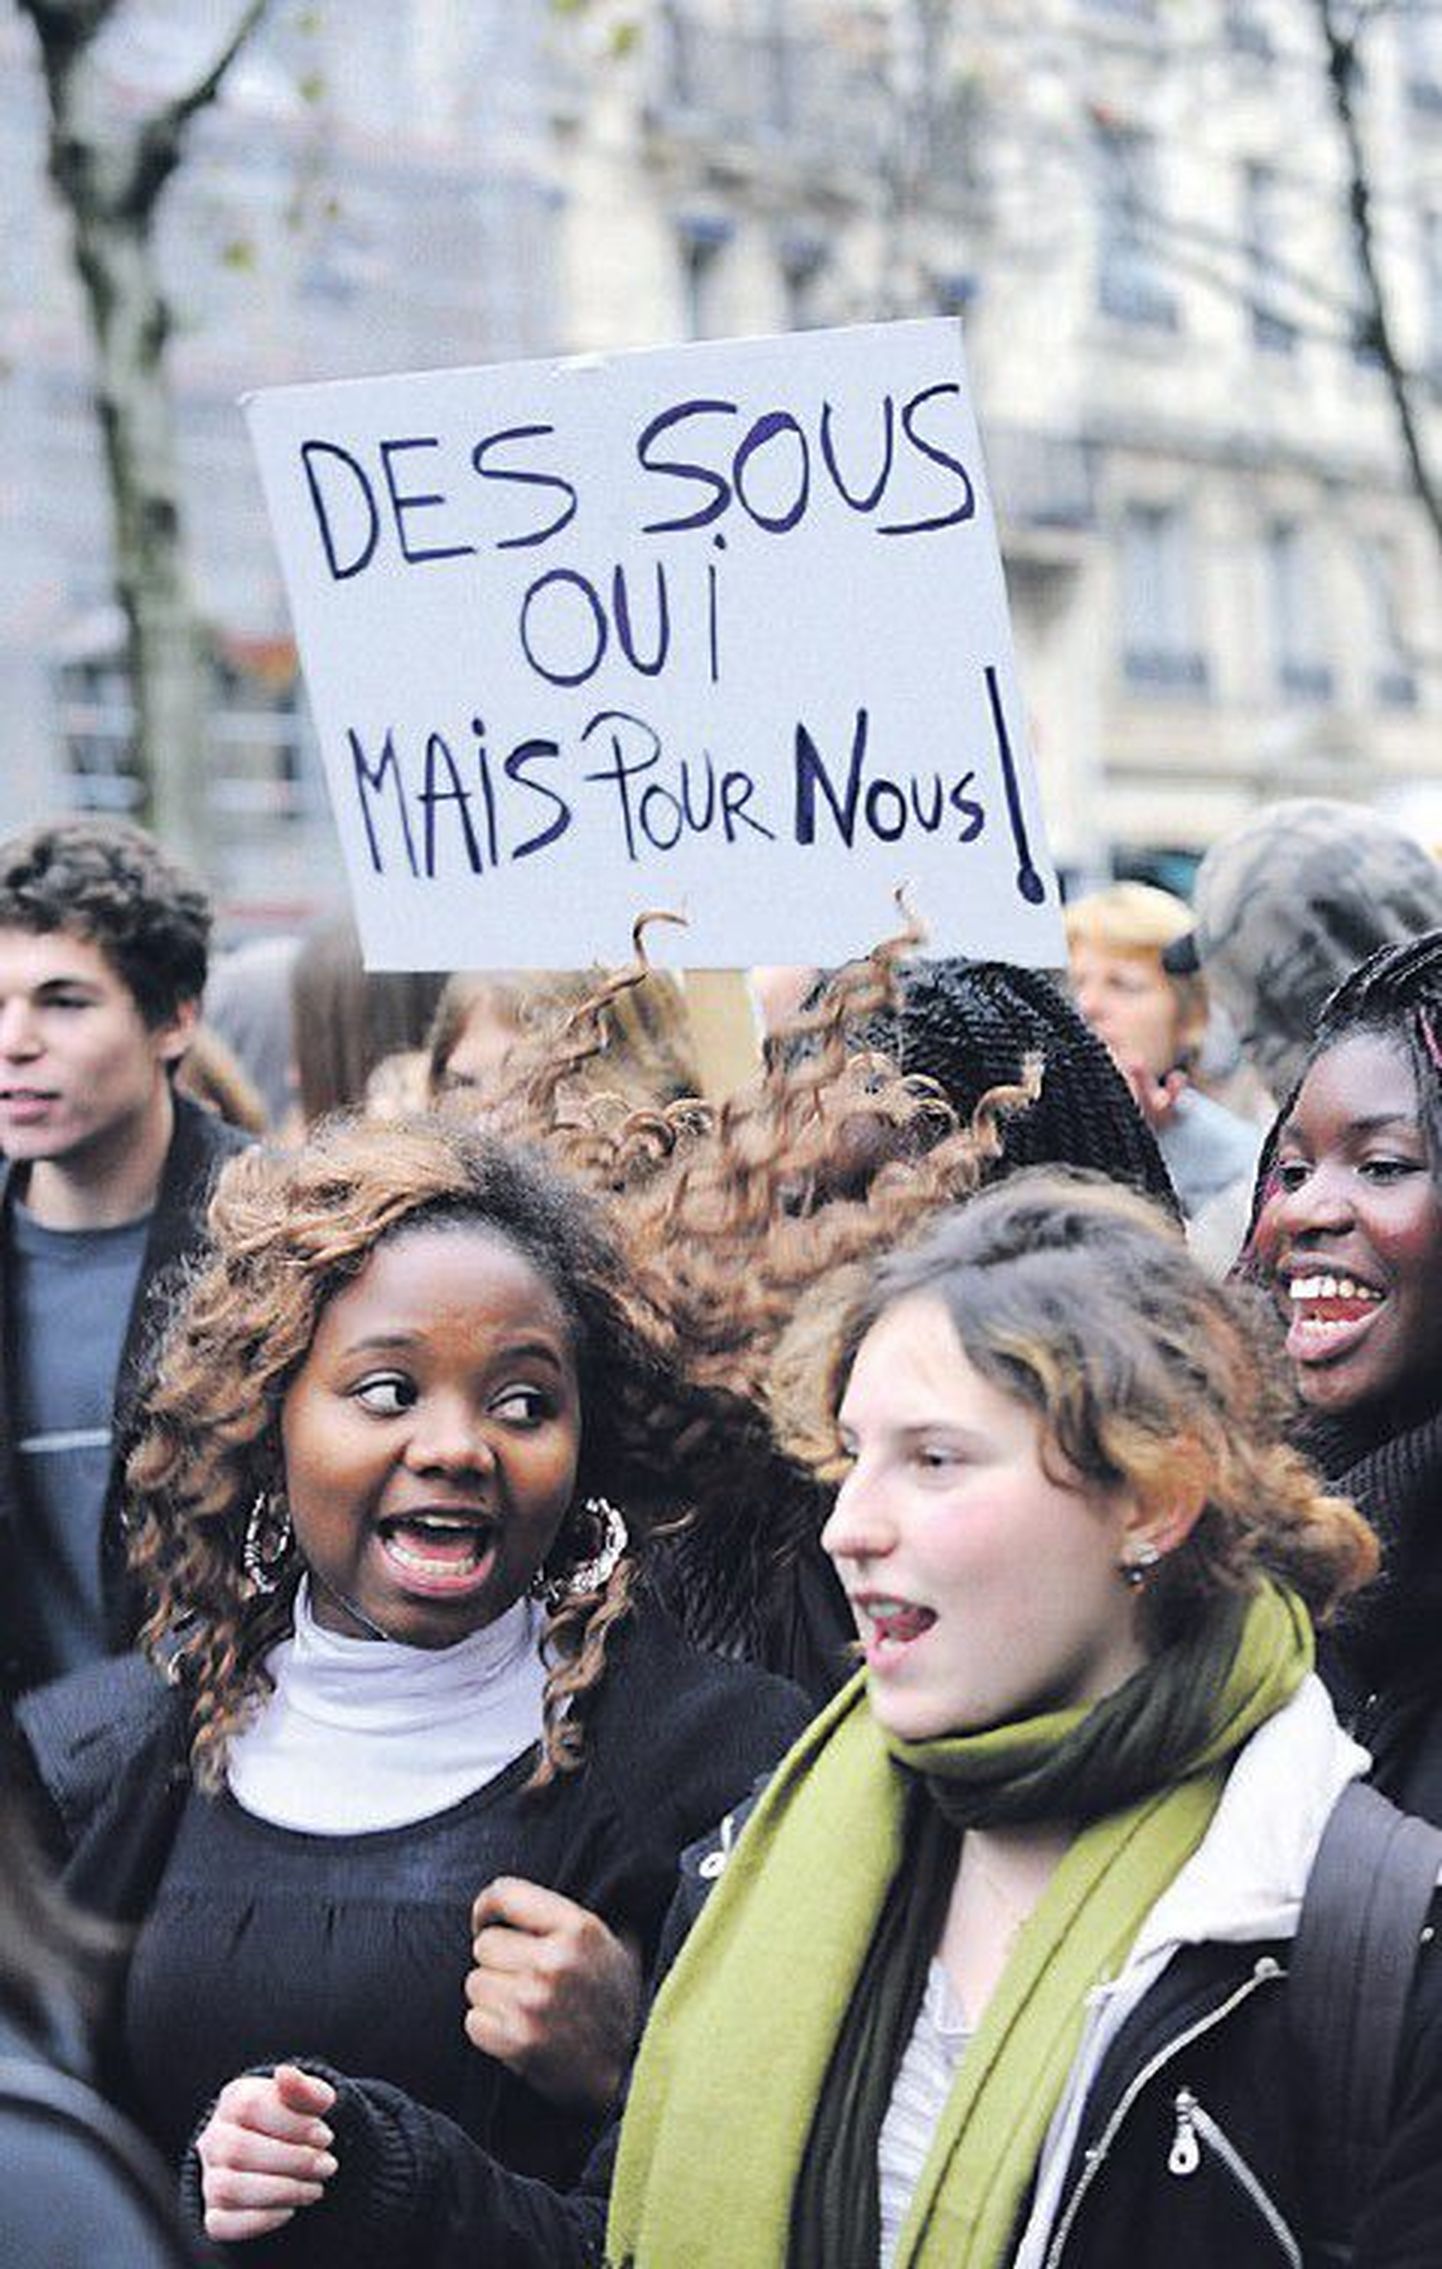 В декабре прошлого года в Париже учащиеся и студенты протестовали против планируемой реформы среднего образования. Многие плакаты гласили: «Деньги — да, но для нас!».